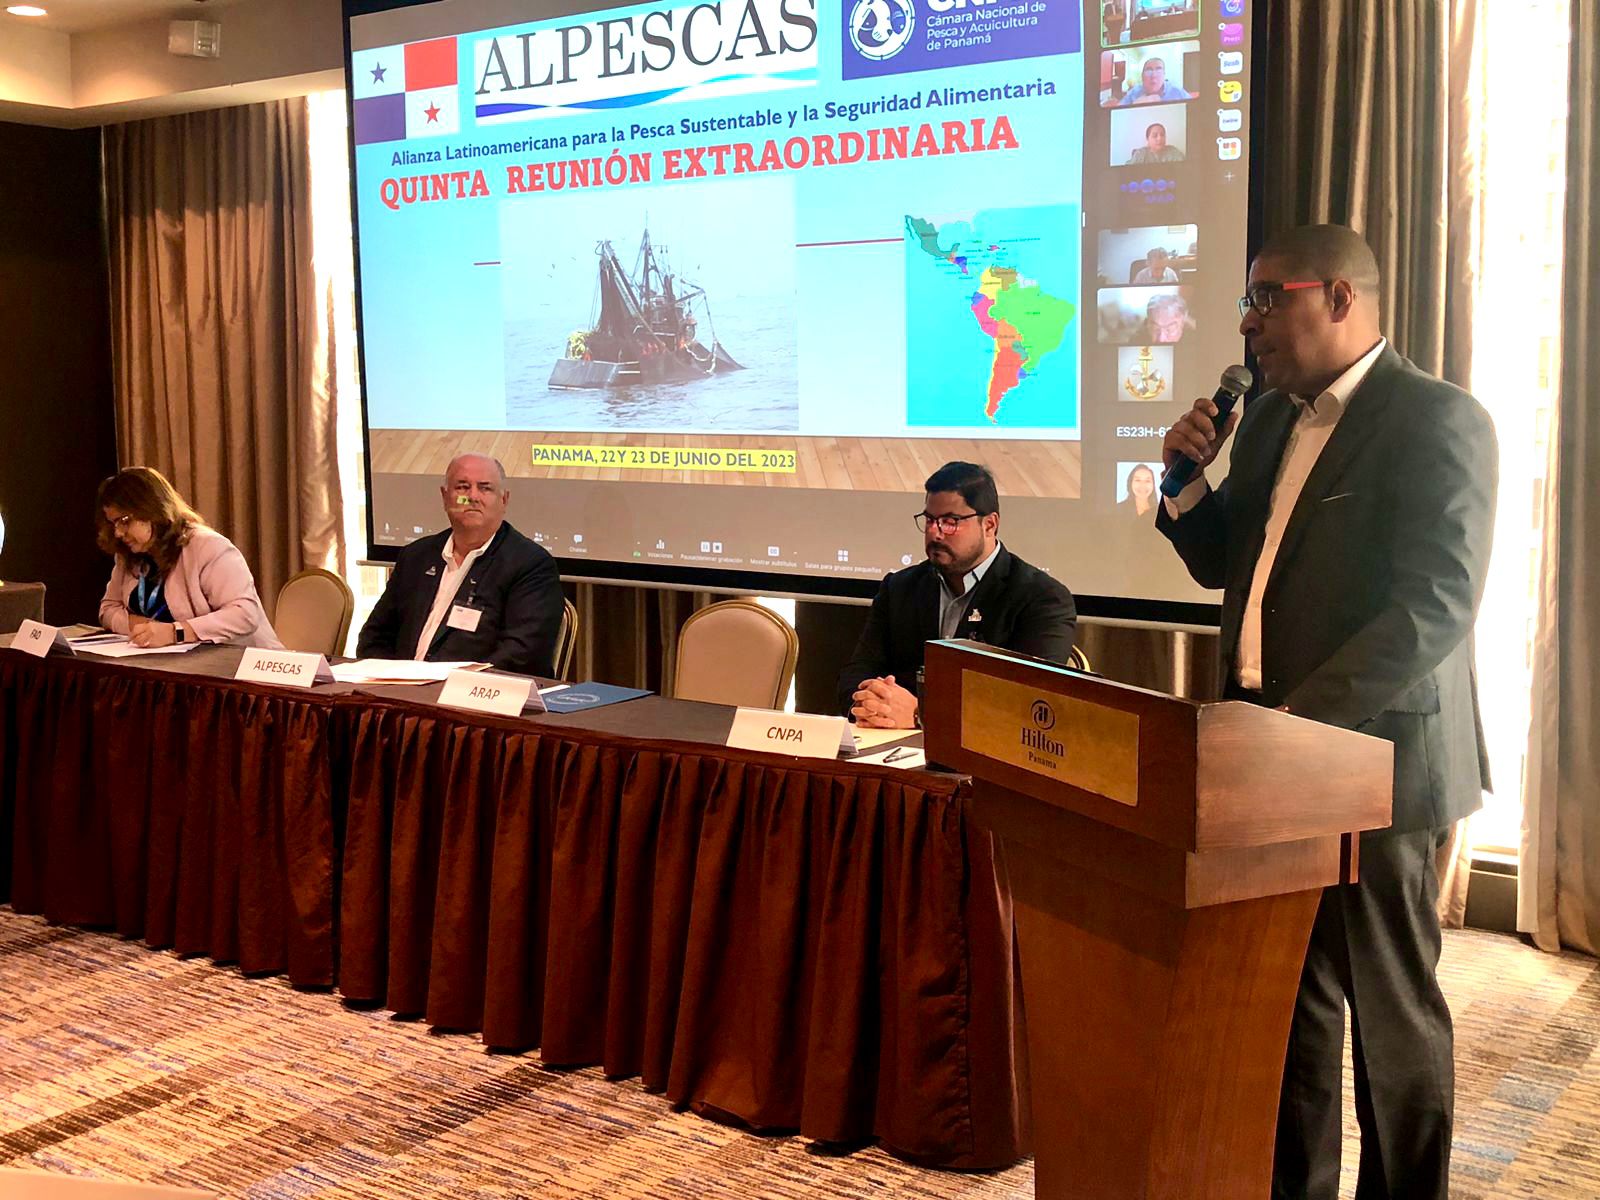 Alianza latinoamericana para la pesca sostenible se reúne en Panamá